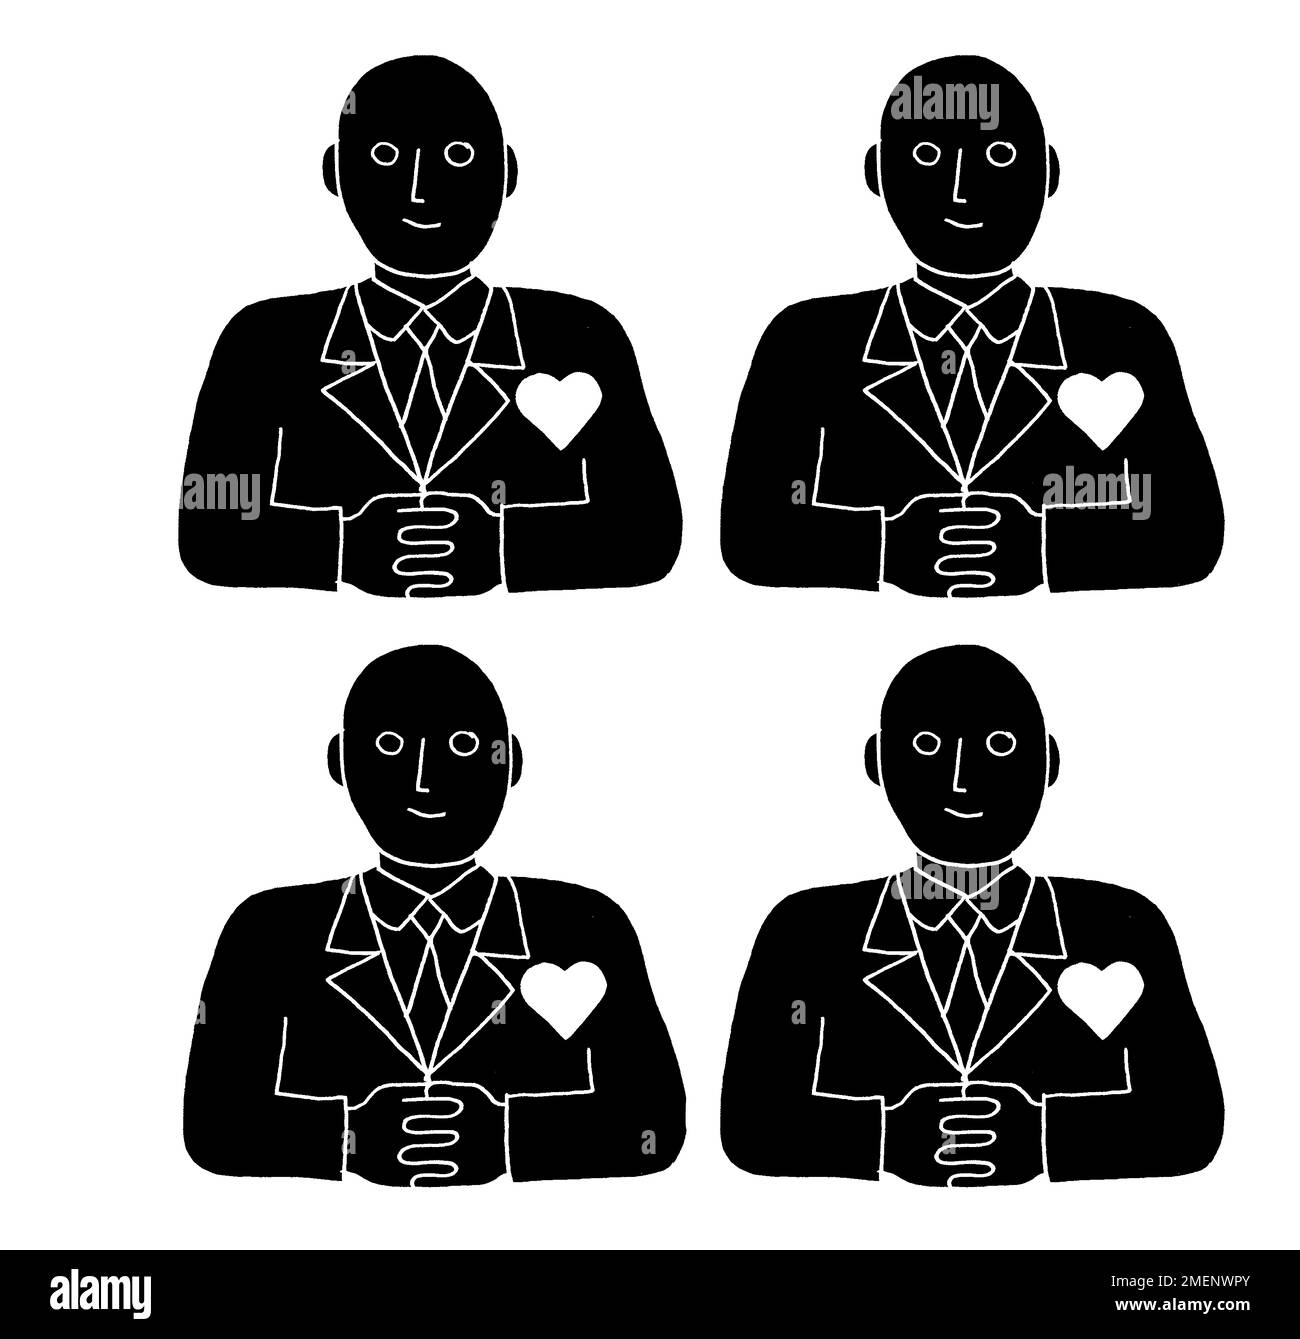 Illustrazione in bianco e nero di quattro uomini con il cuore sul loro petto Foto Stock